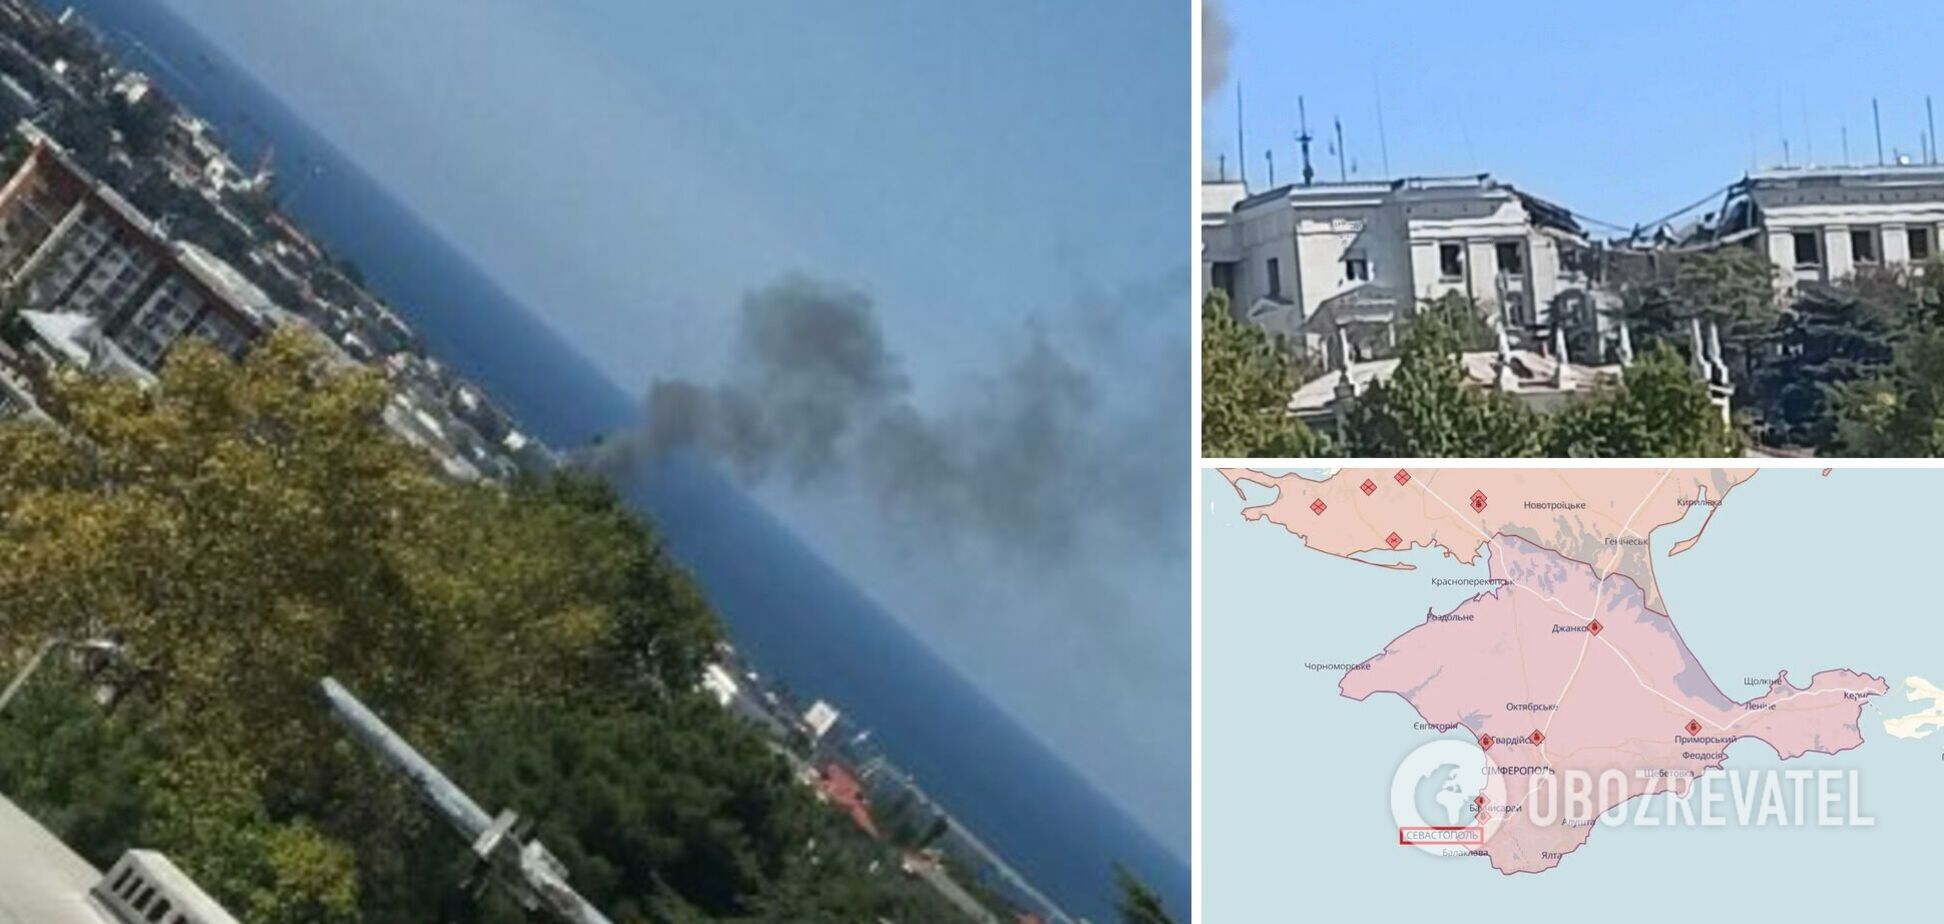 Поднялся черный дым: в Севастополе нанесен удар по штабу ЧФ РФ, есть разрушение и погибший. Фото и видео